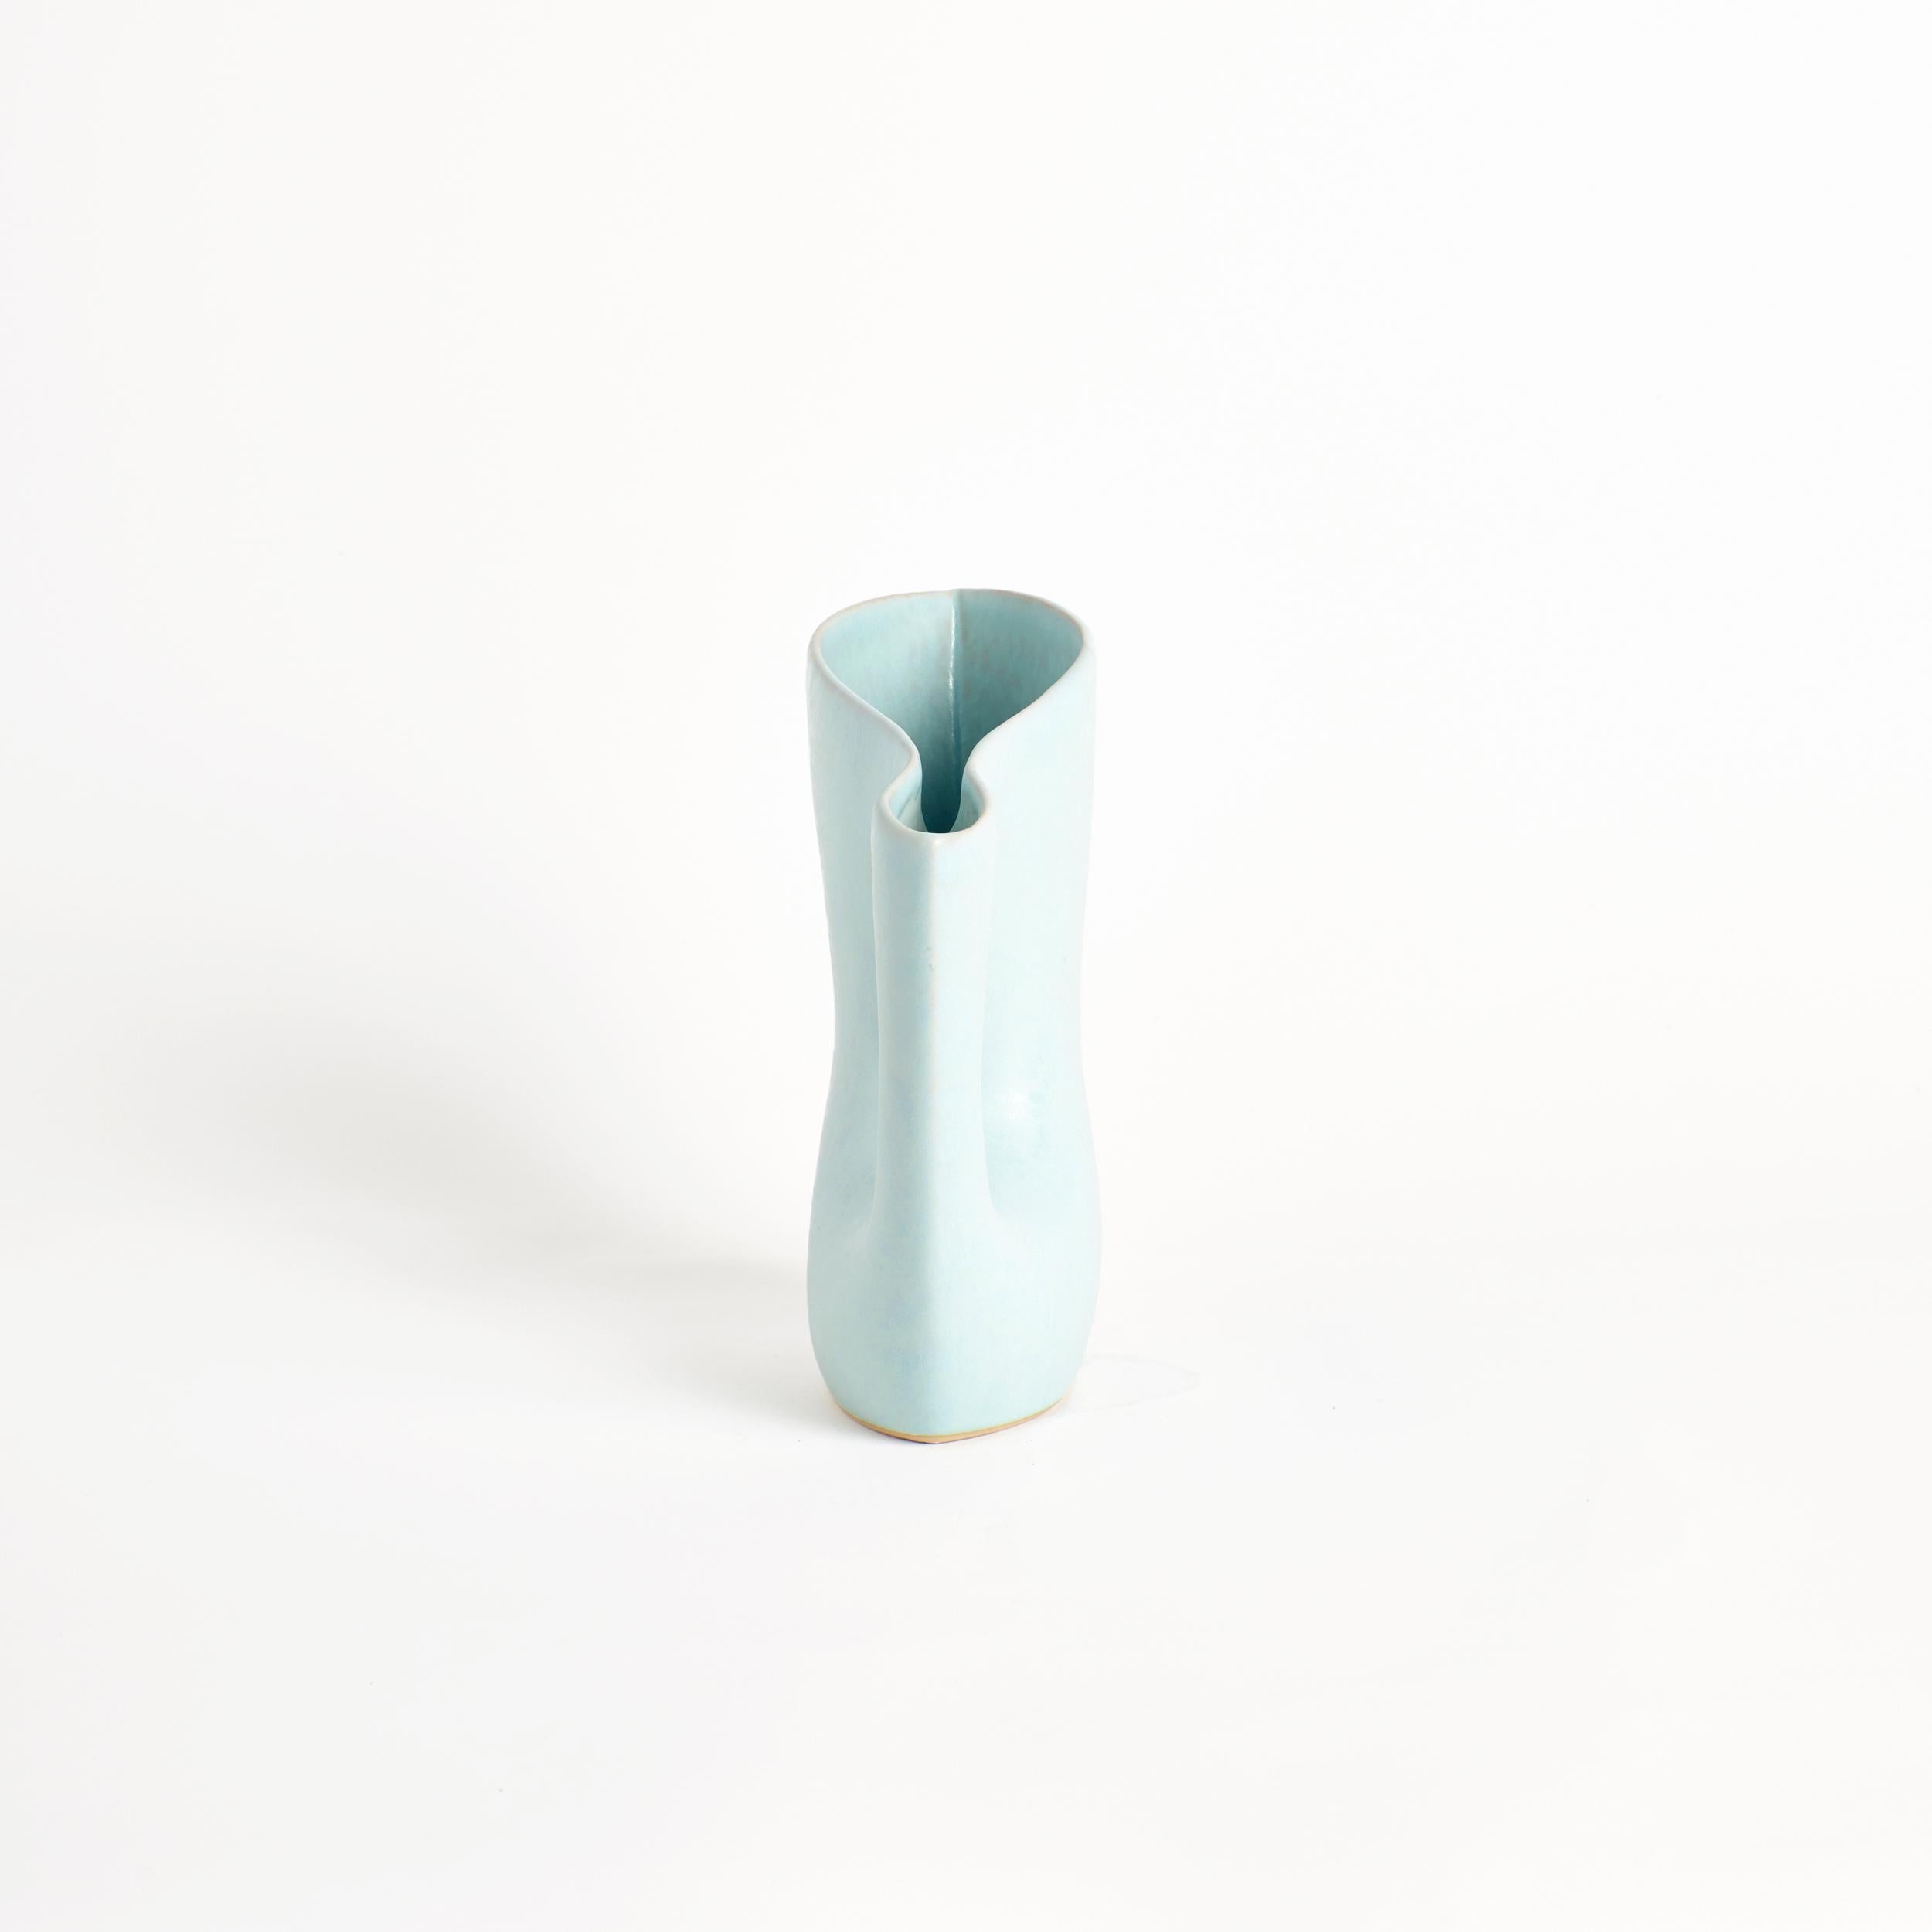 Cruche Mamasita en Baby Blue
Conçu par Project 213A en 2021
Grès cérame fait à la main
Imperméable à l'eau


Cette cruche élégamment sculptée présente une ouverture continue et s'inspire d'un vase effondré. La pièce est conçue pour enrichir le